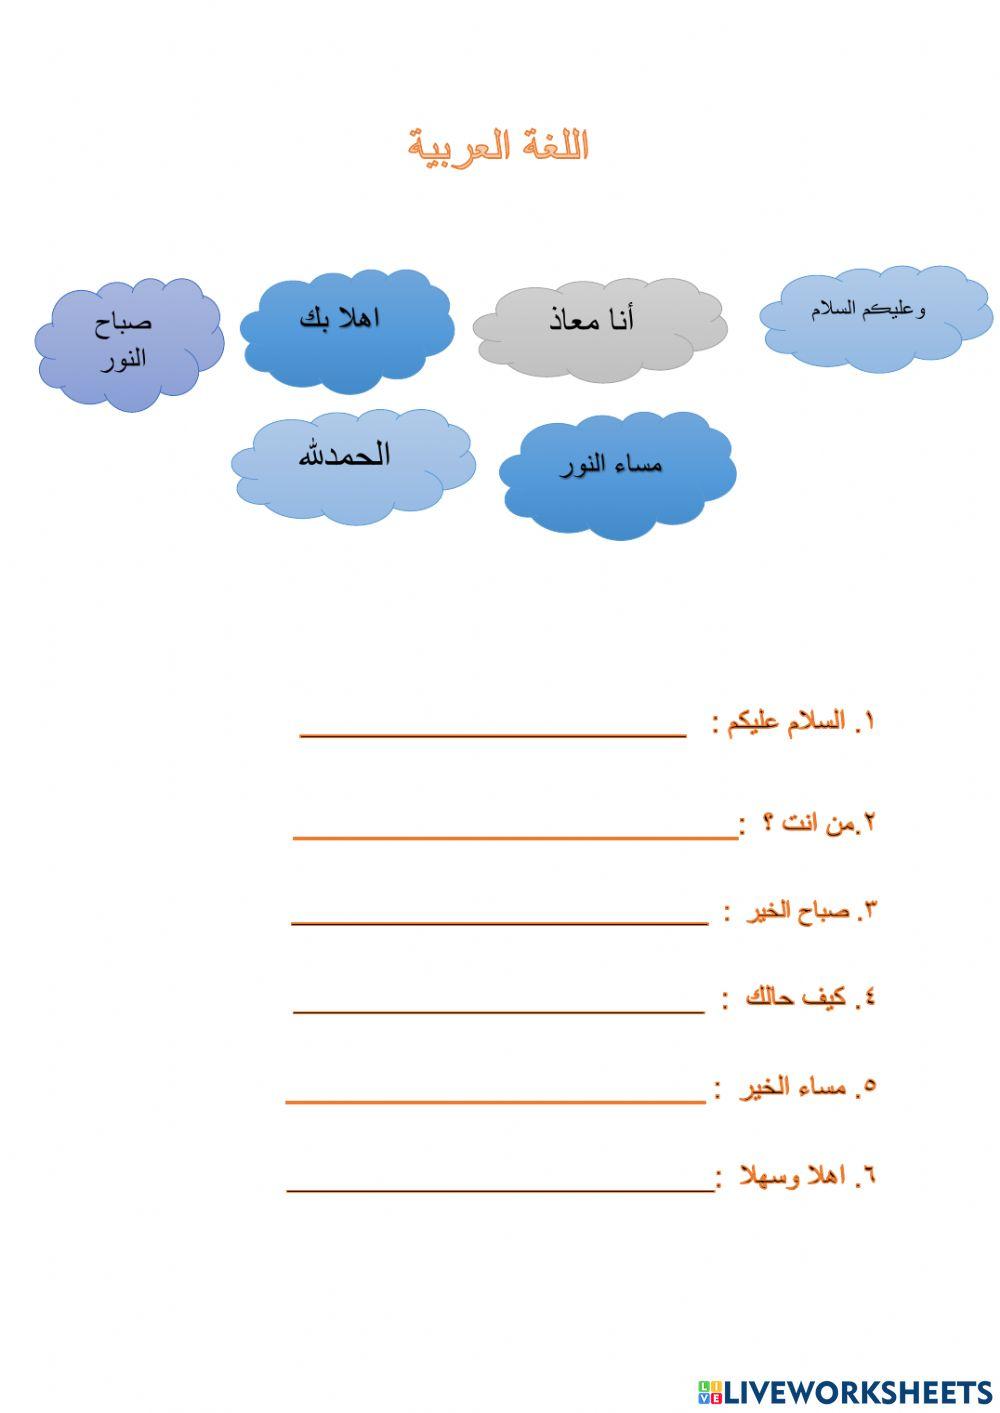 bahasa arab